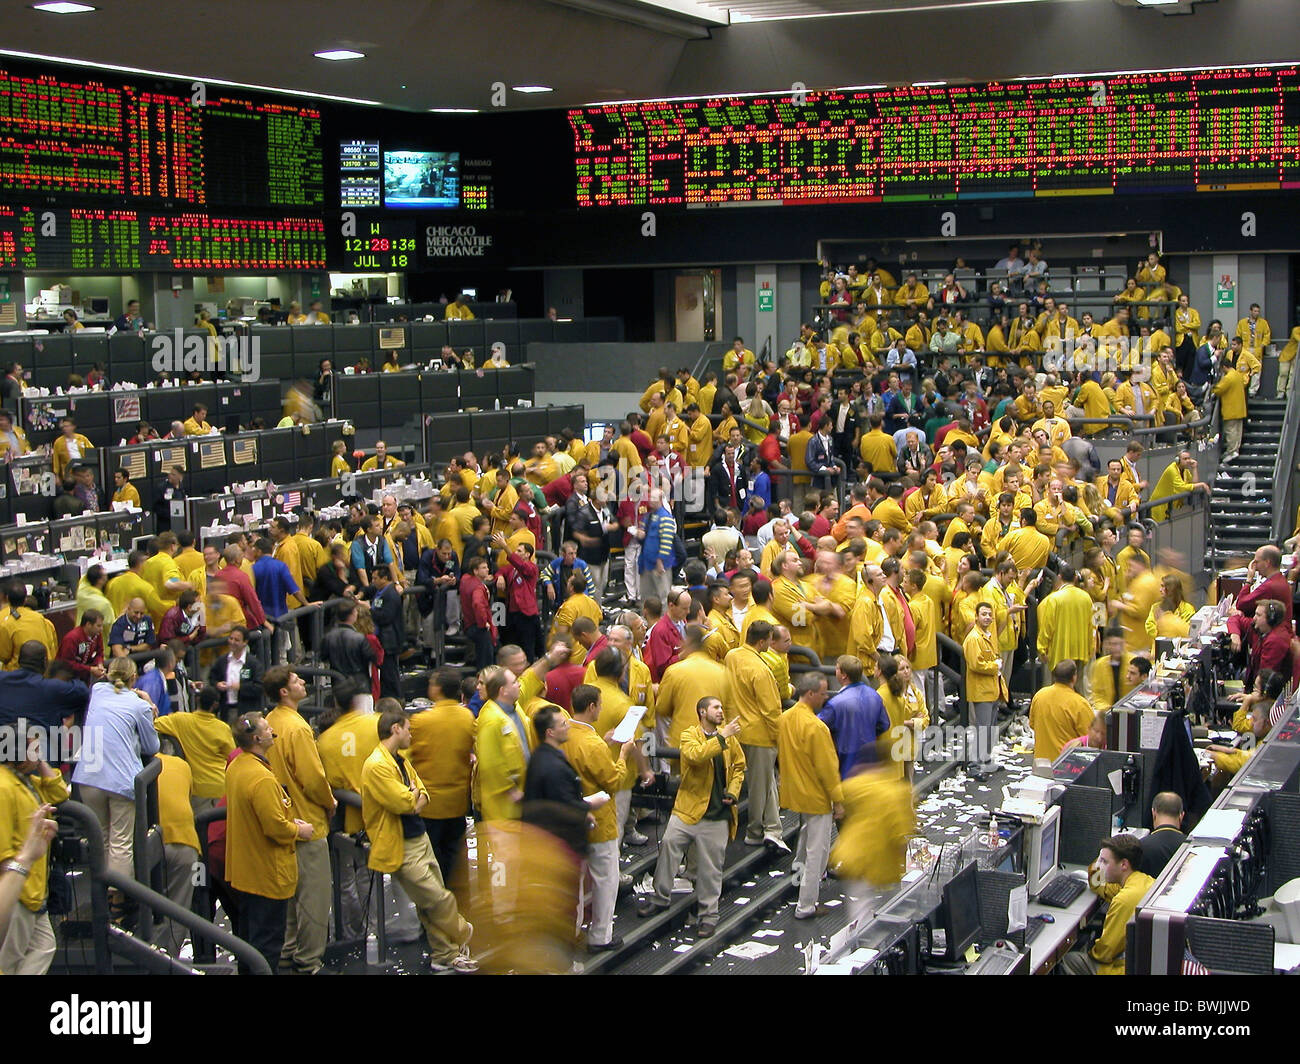 Börse im inneren Menschen Makler zeigt Handel Gewerbe Trading Floor Chicago Mercantile Exchange Chicag Stockfoto